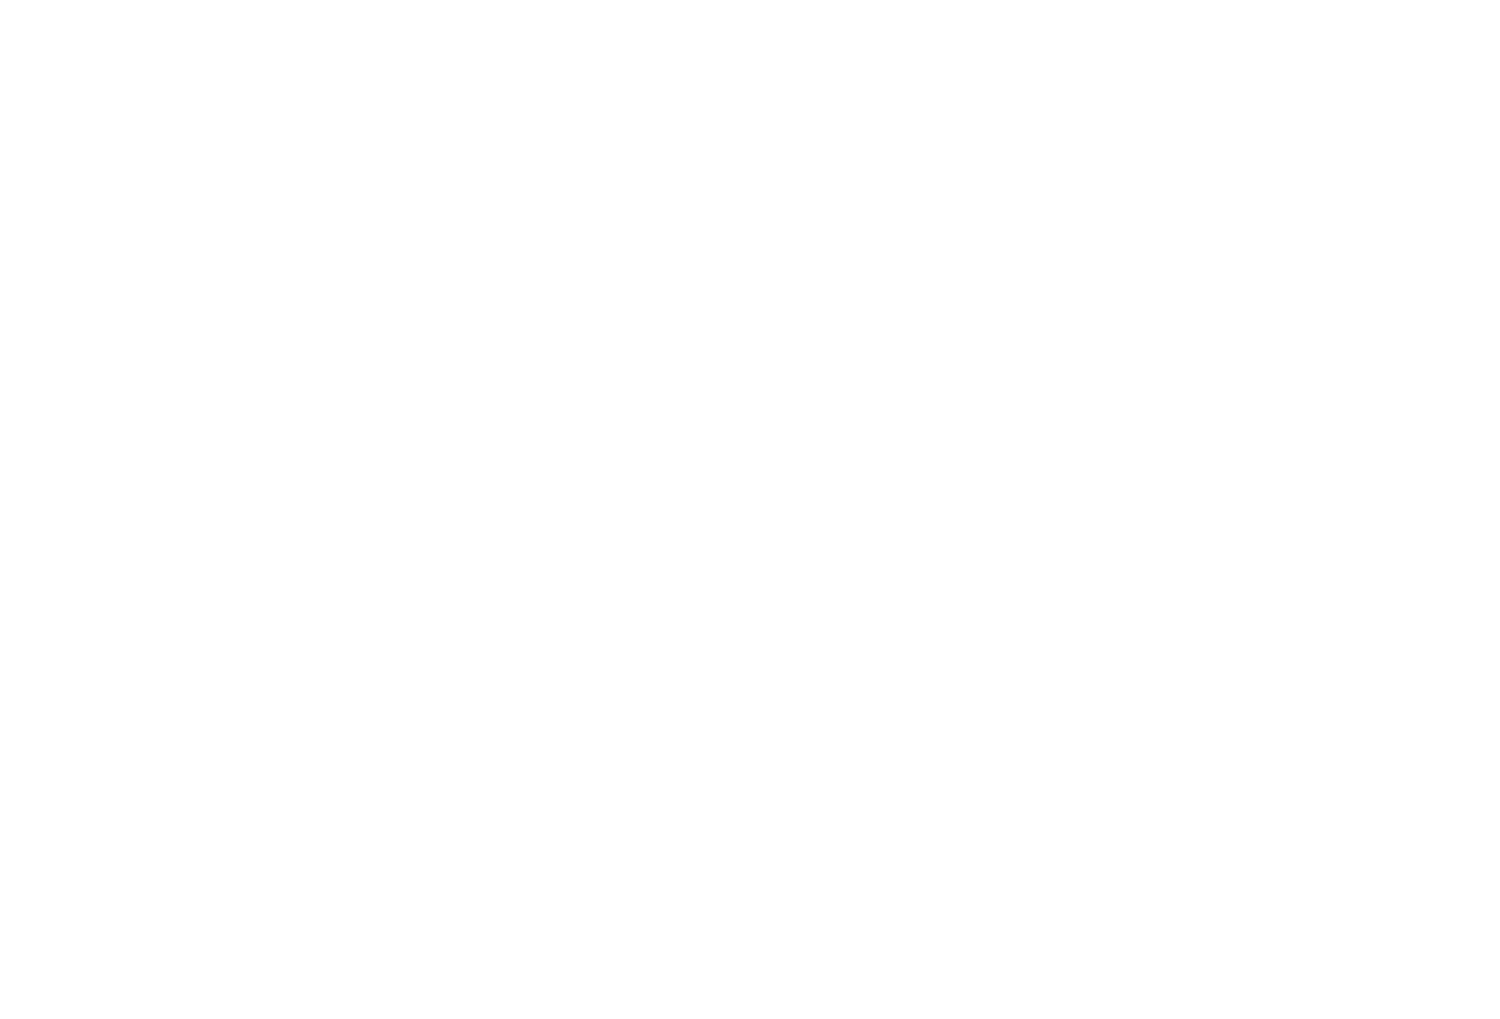 Seattle Jiu-Jitsu Academy